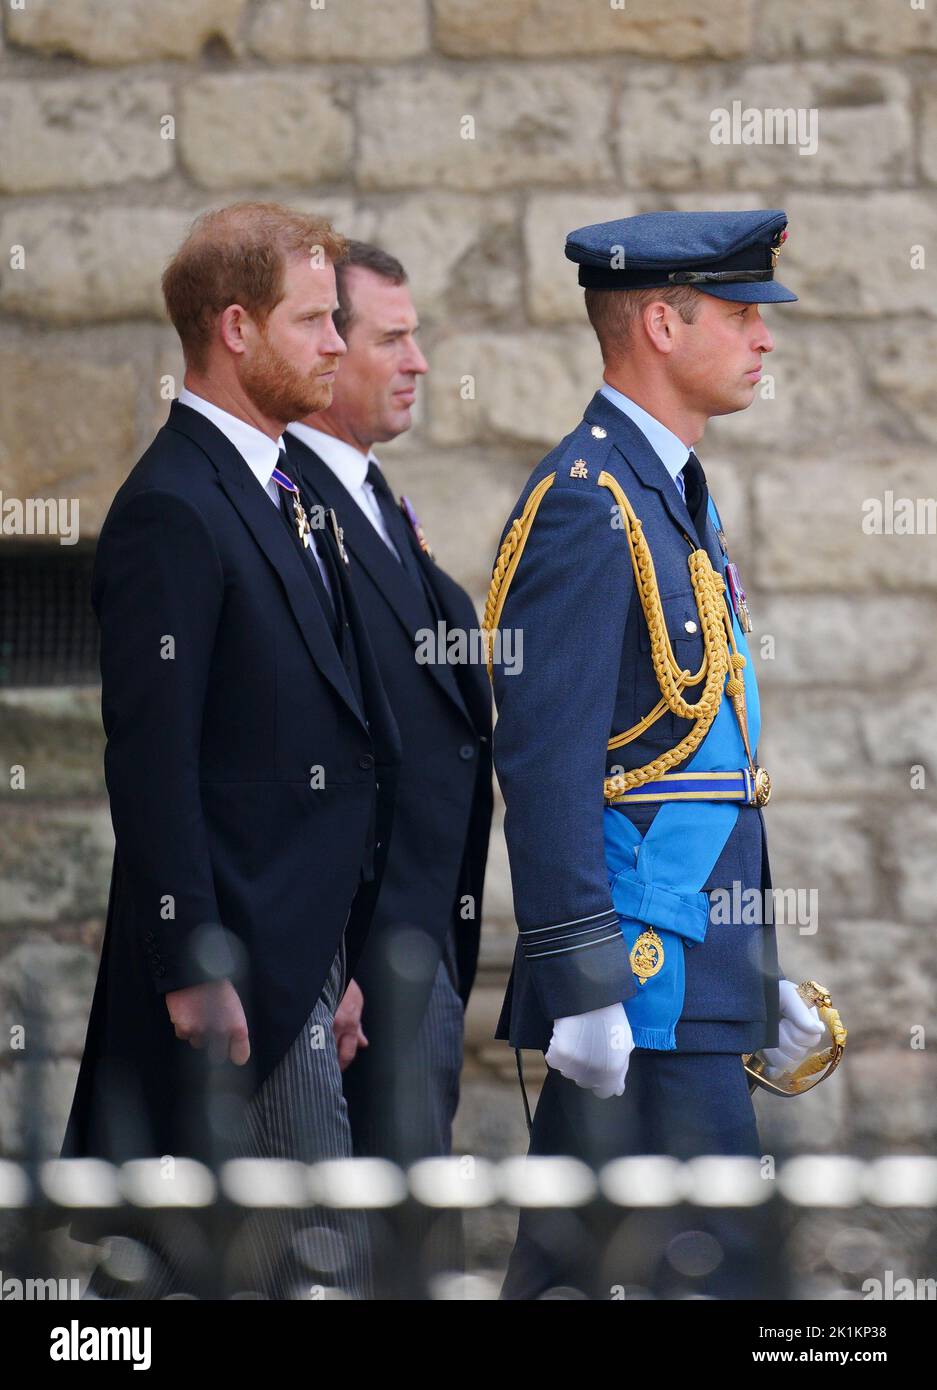 (De gauche à droite) le duc de Sussex, Peter Phillips et le prince de Galles quittent le funéraire d'État de la reine Elizabeth II, qui s'est tenu à l'abbaye de Westminster, à Londres. Date de la photo: Lundi 19 septembre 2022. Banque D'Images